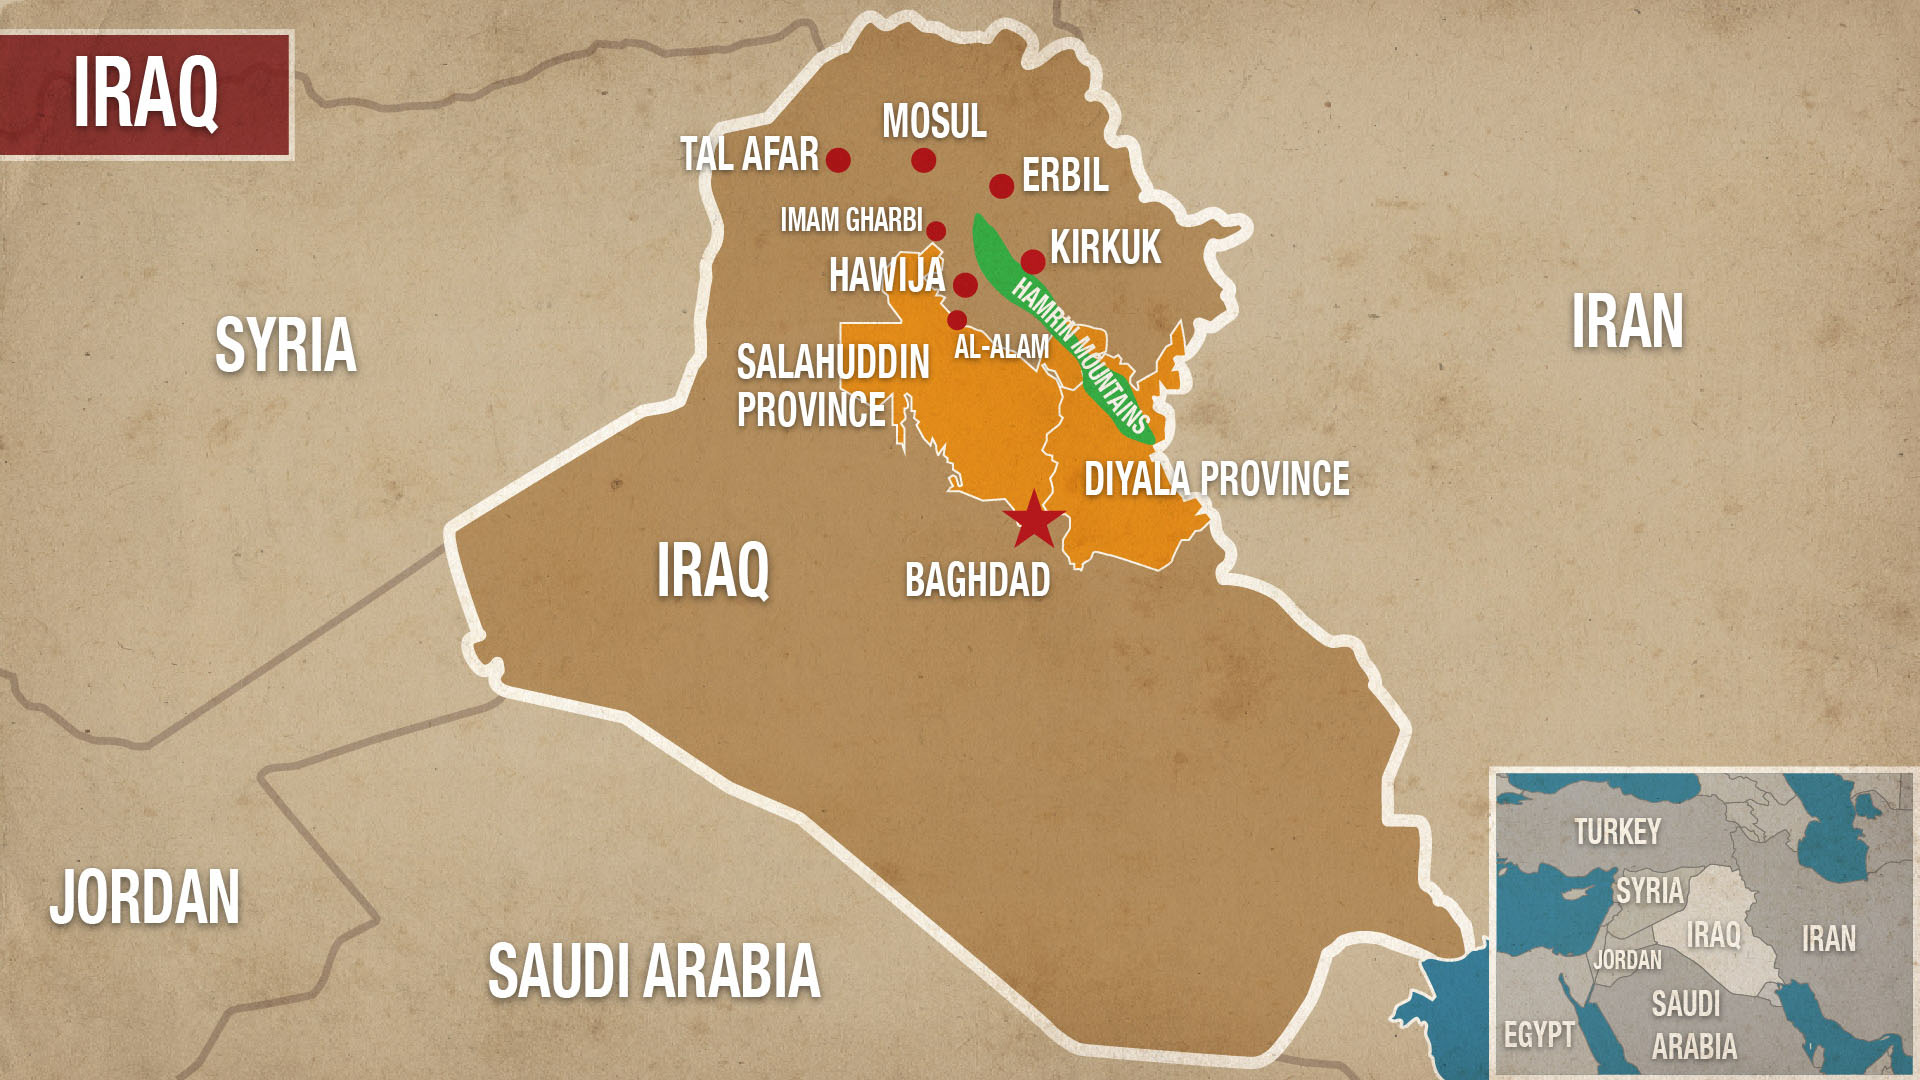 IRAQ-MOSUL-ERBIL-TAL-AFAR-HAWIJA+Provinces.jpg